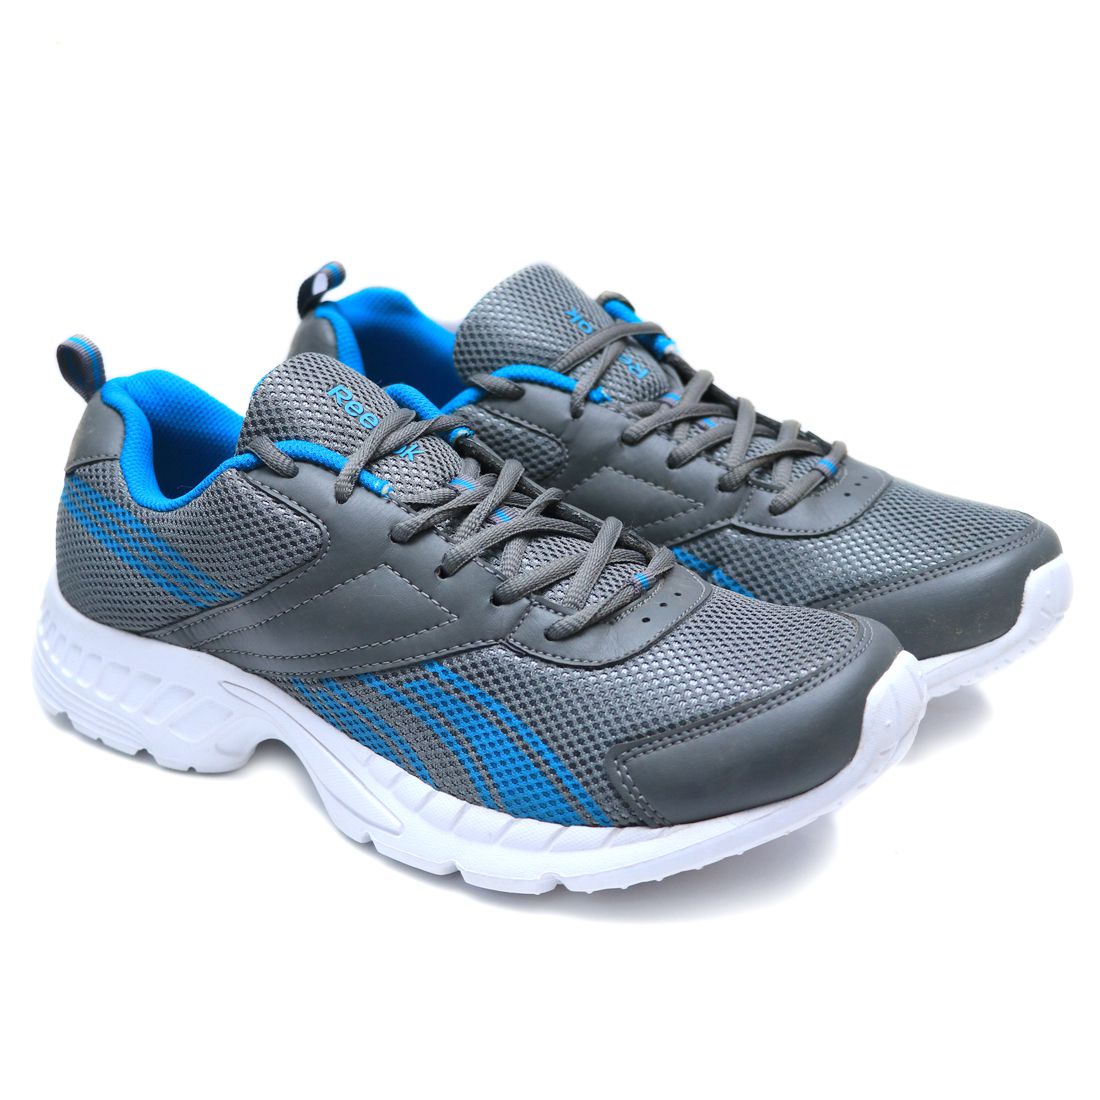 Reebok Mobile Runner Trainer Gray Running Shoes - Buy Reebok Mobile ...